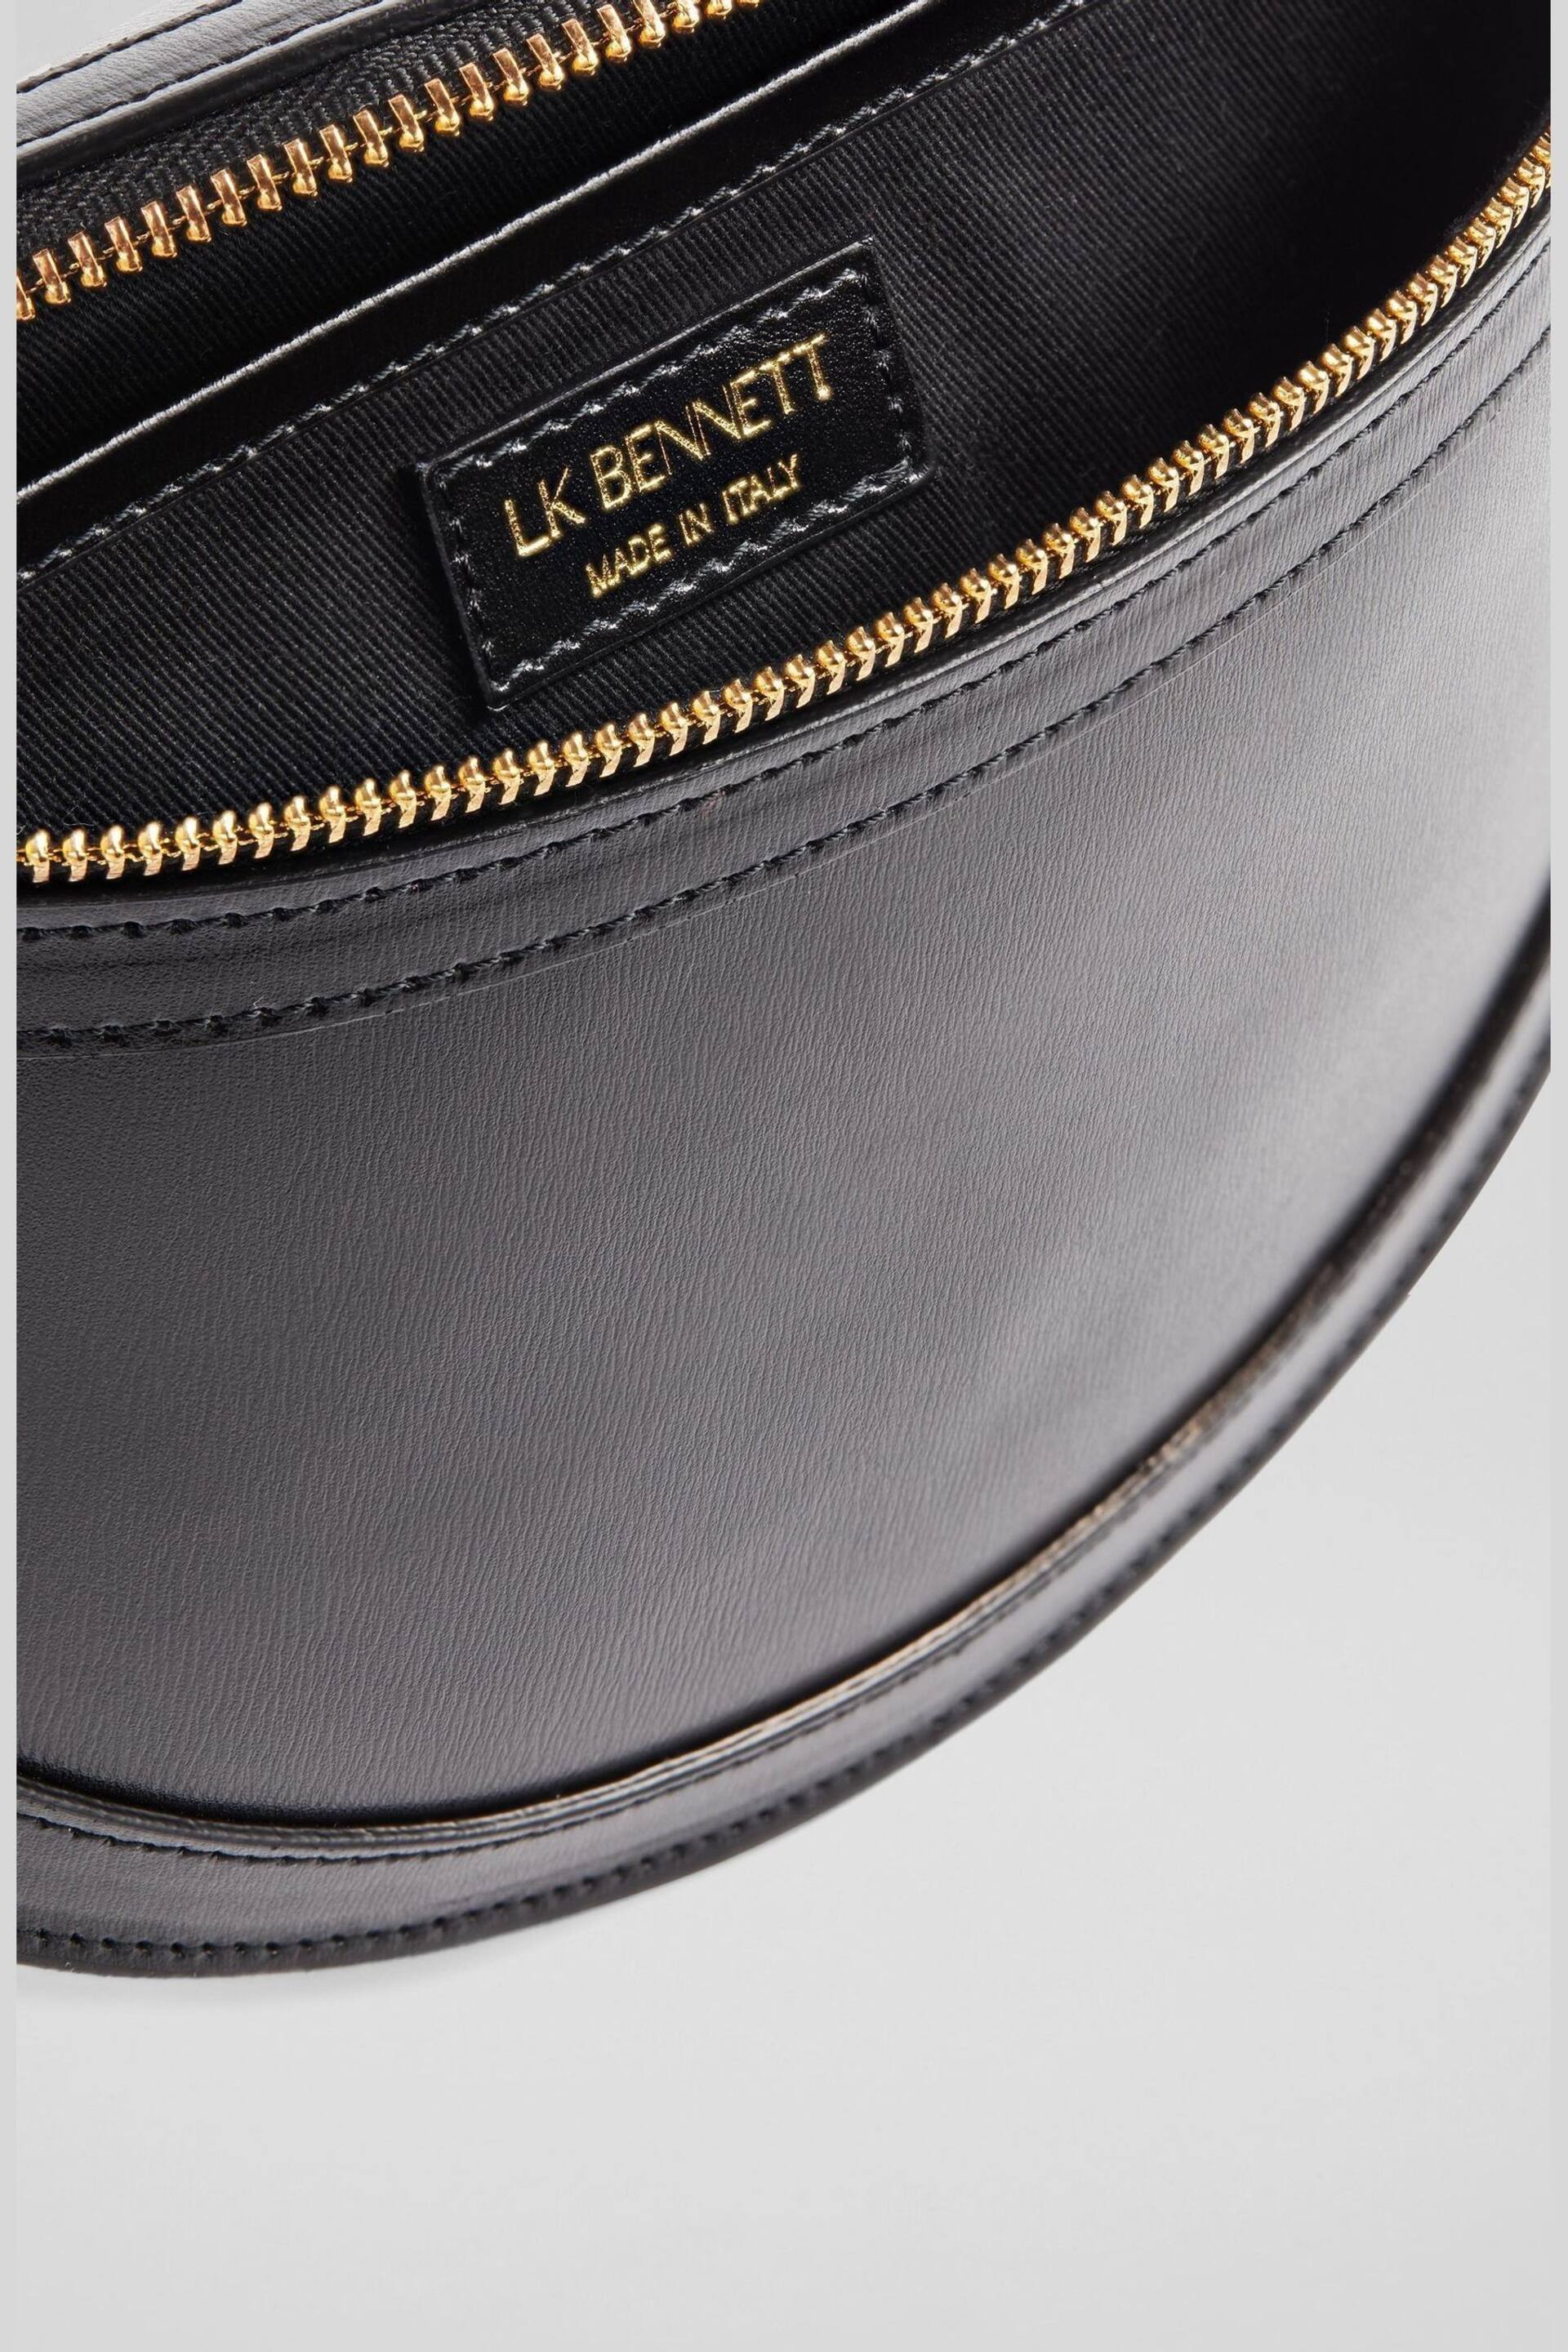 LK Bennett Greta Leather Cross-Body Bag - Image 6 of 6